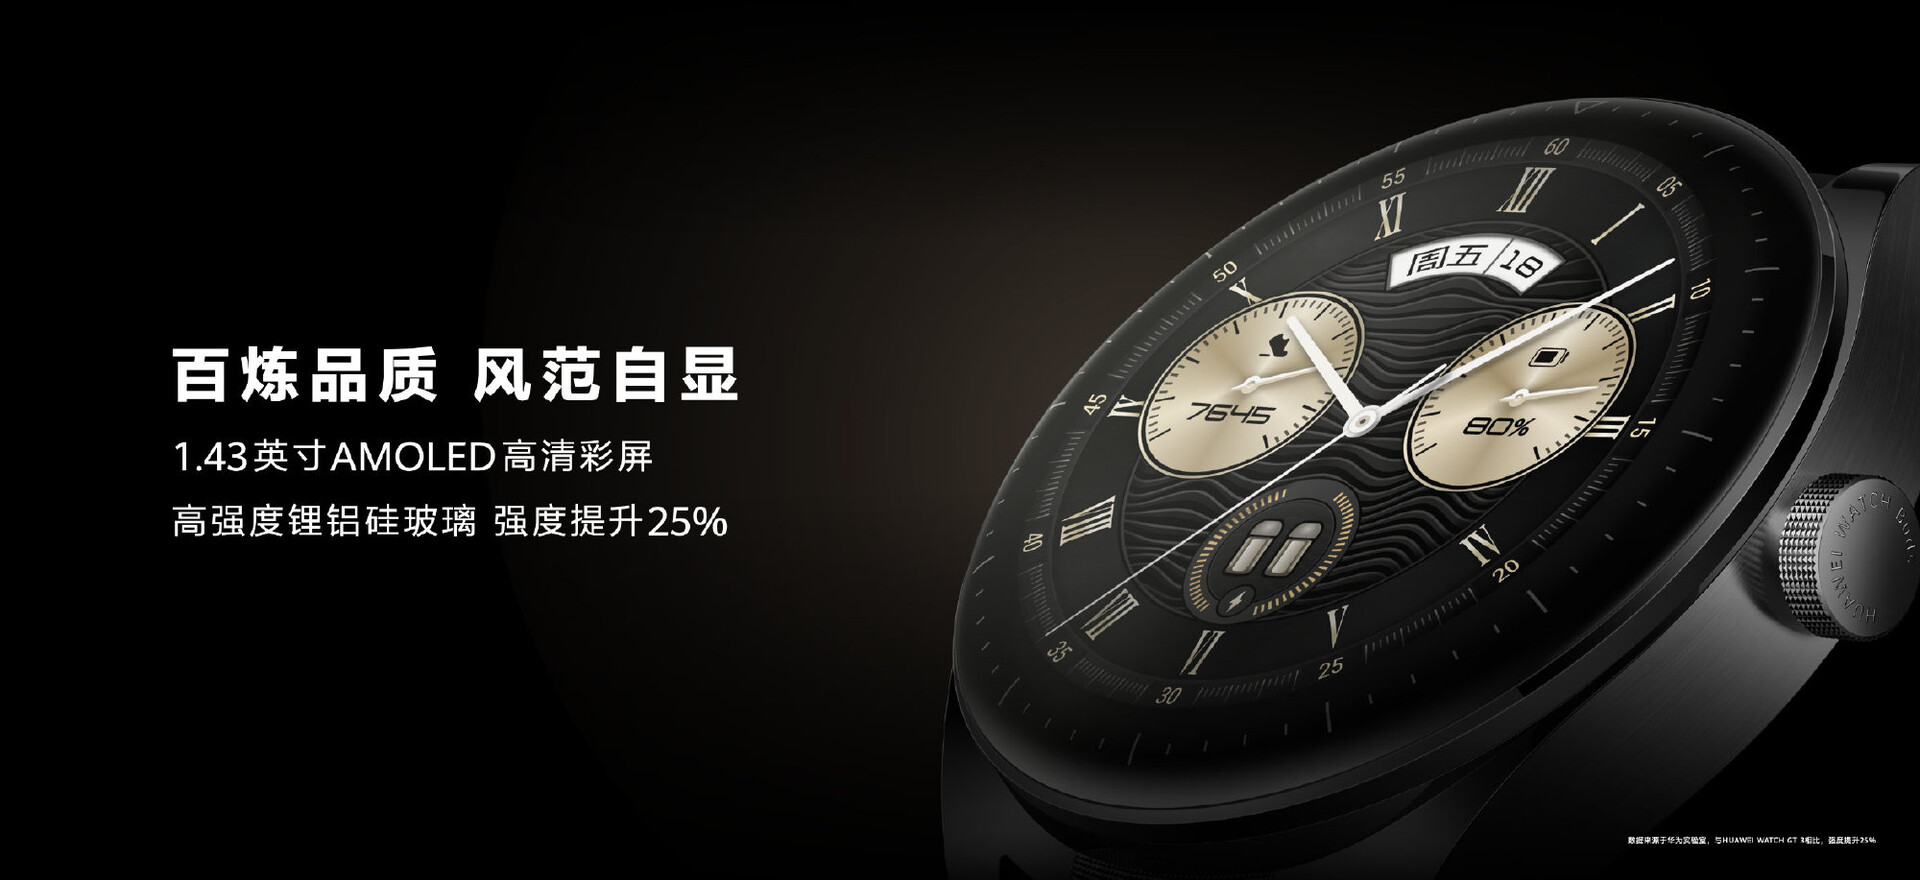 mit Watch - vorgestellt: AMOLED-Display verstaut Huawei News Buds Ohrhörer in aufklappbarem schicker Huawei Smartwatch Notebookcheck.com